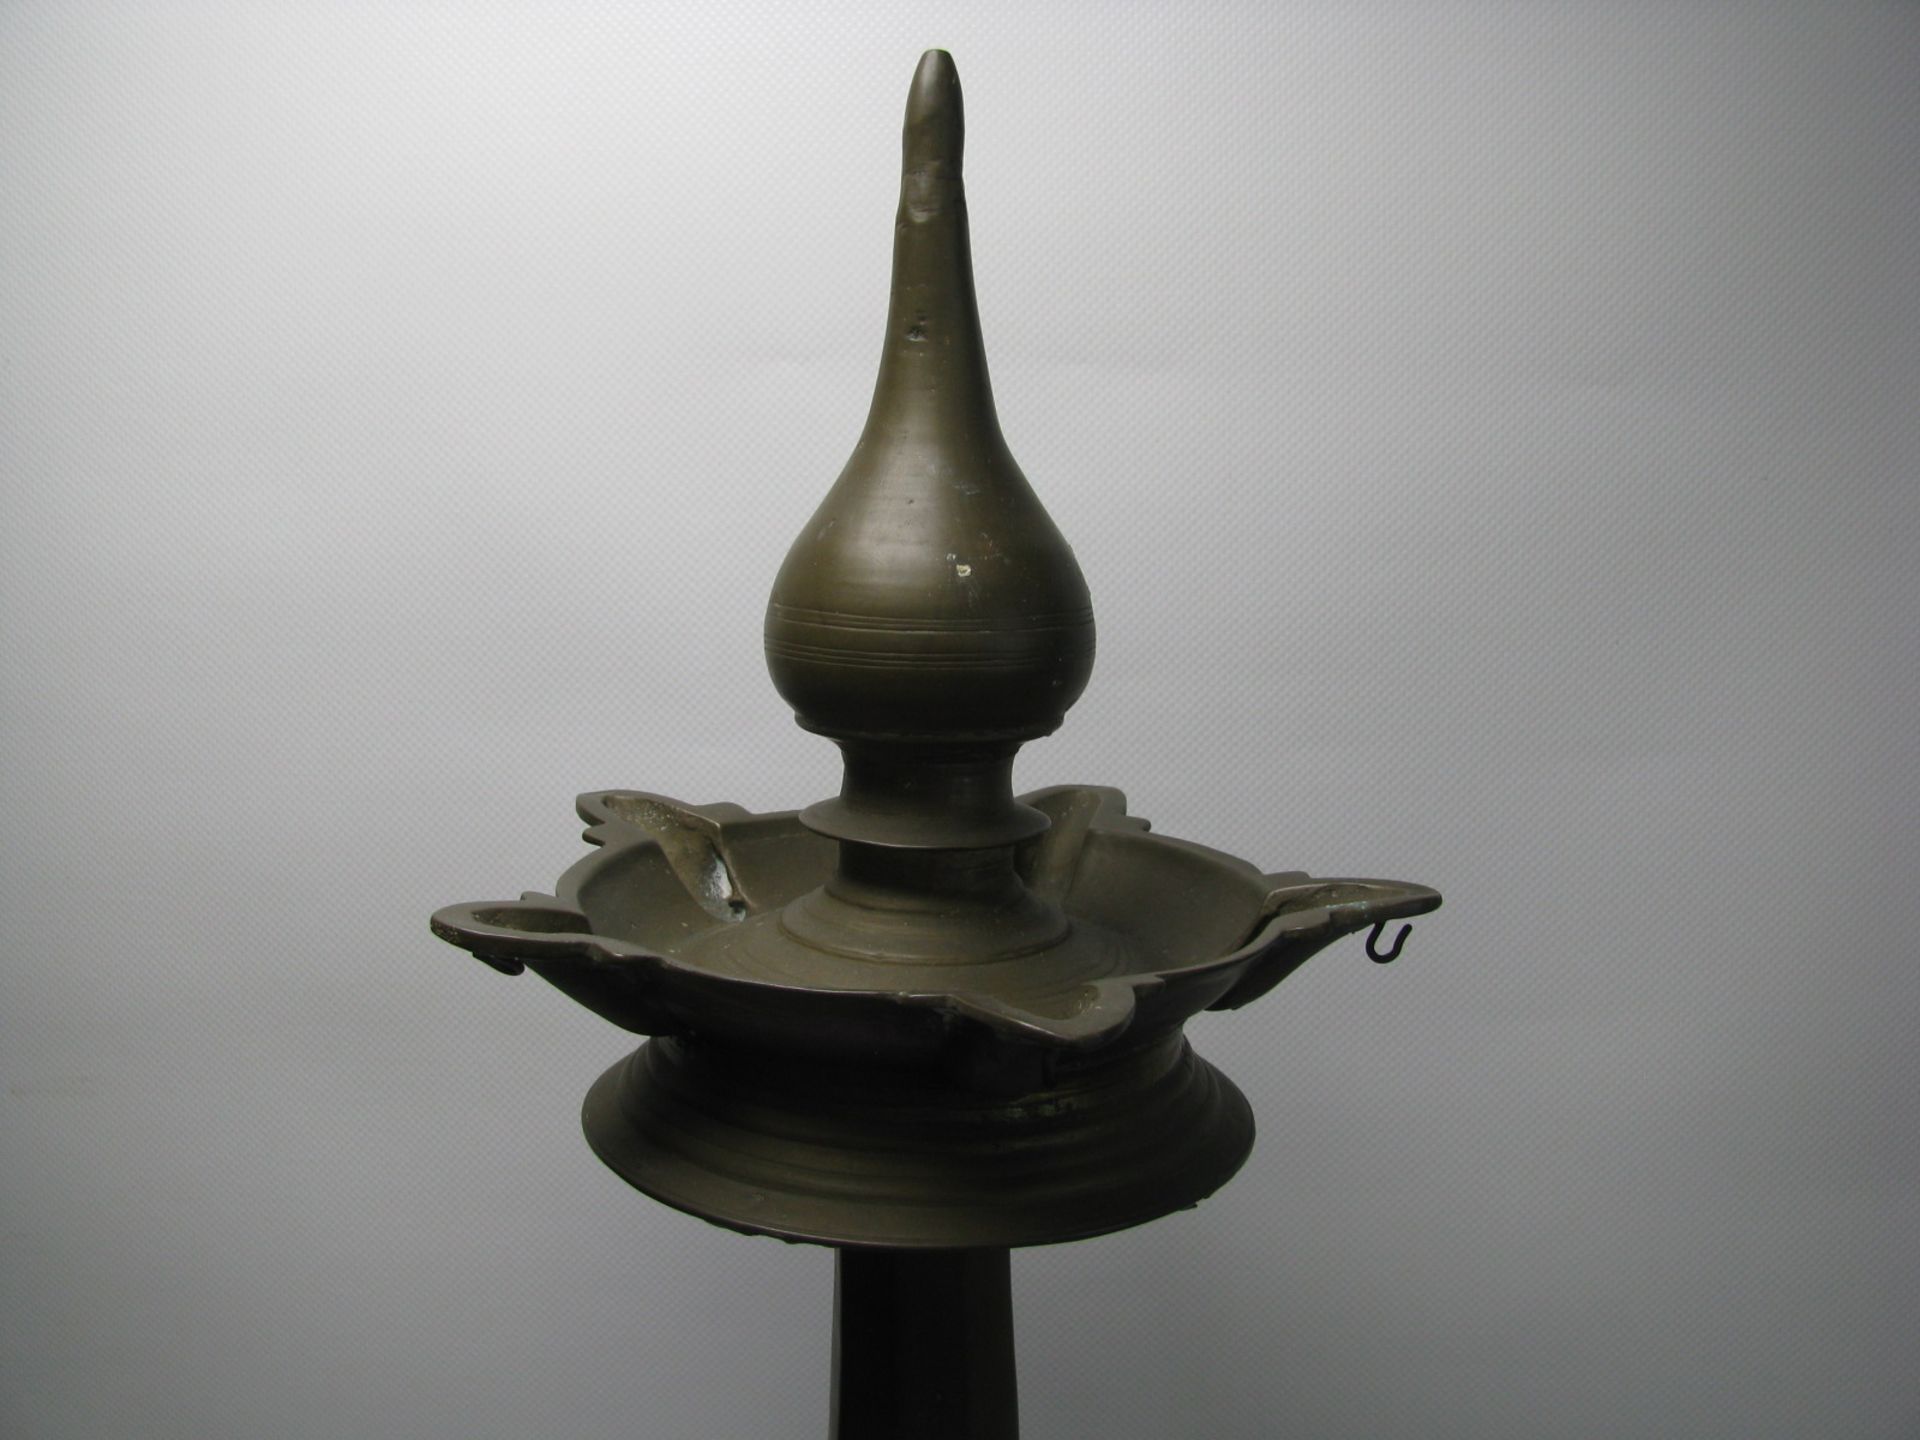 Antike Öllampe, wohl Indien, Bronze, 5-flammig, h 64 cm, d 27 cm. - Bild 2 aus 2